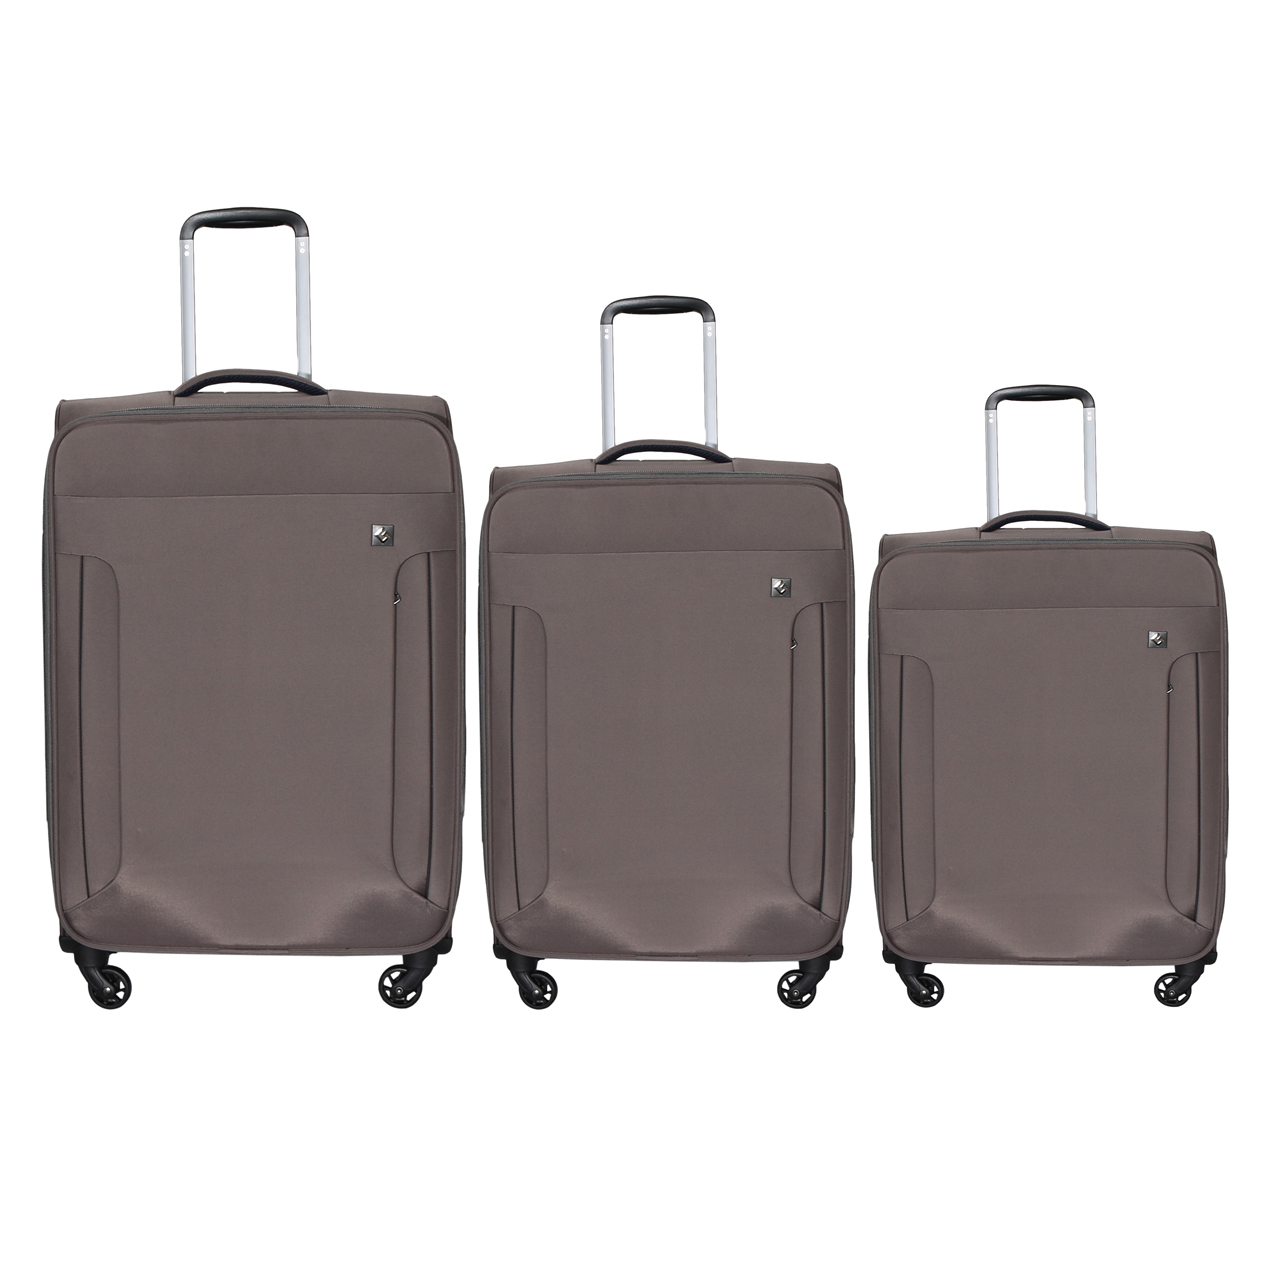 مجموعه سه عددی چمدان جنوا مدل G2425-3